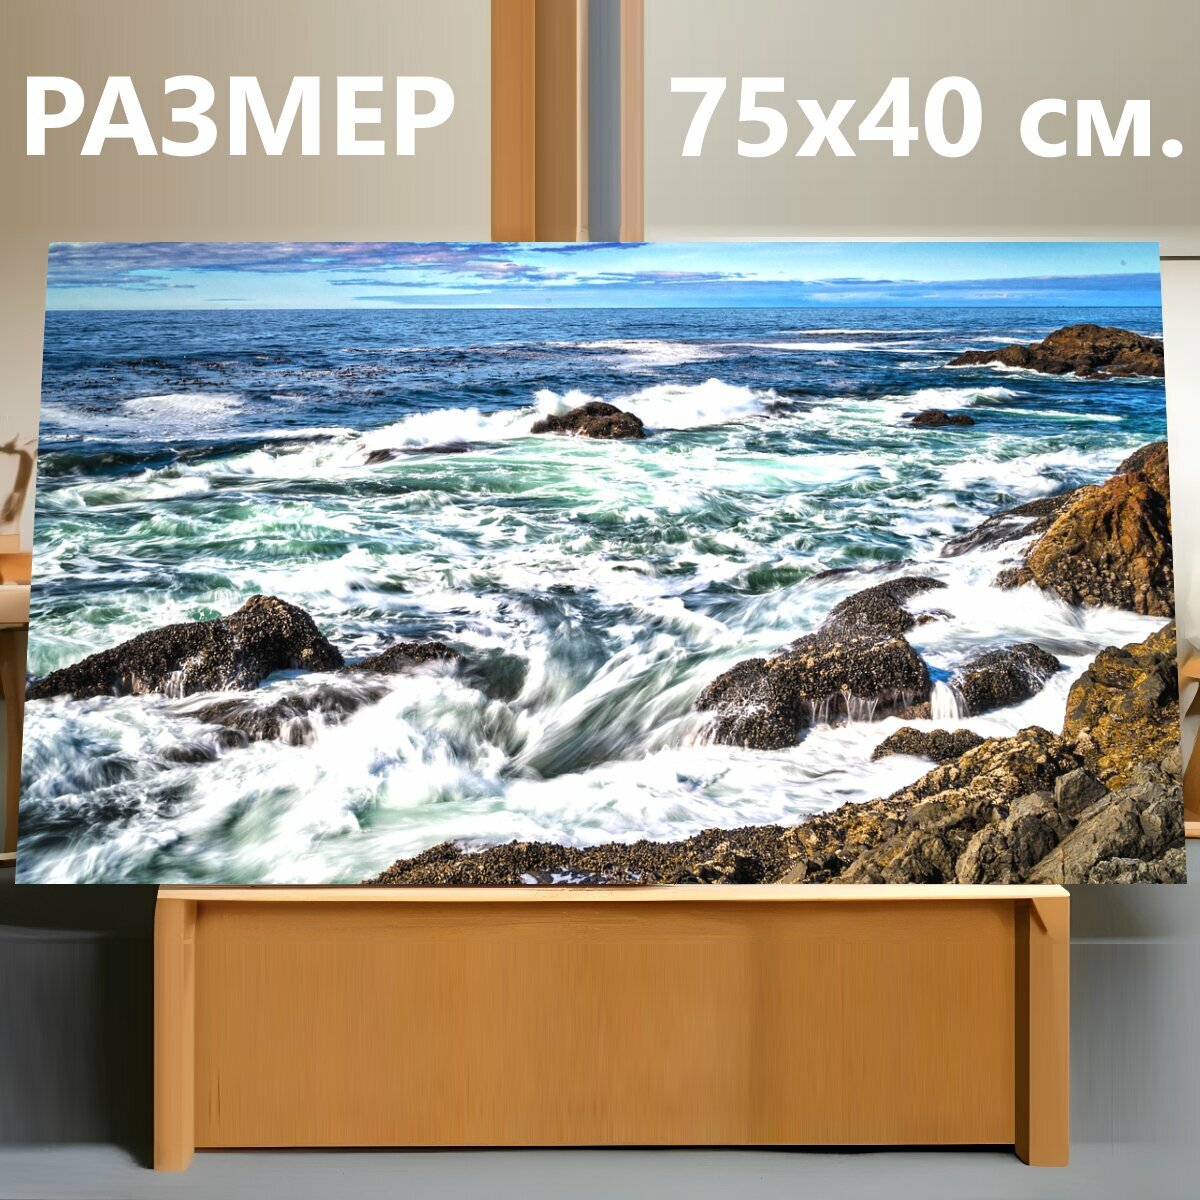 Картина на холсте "Море, волны, морской берег" на подрамнике 75х40 см. для интерьера